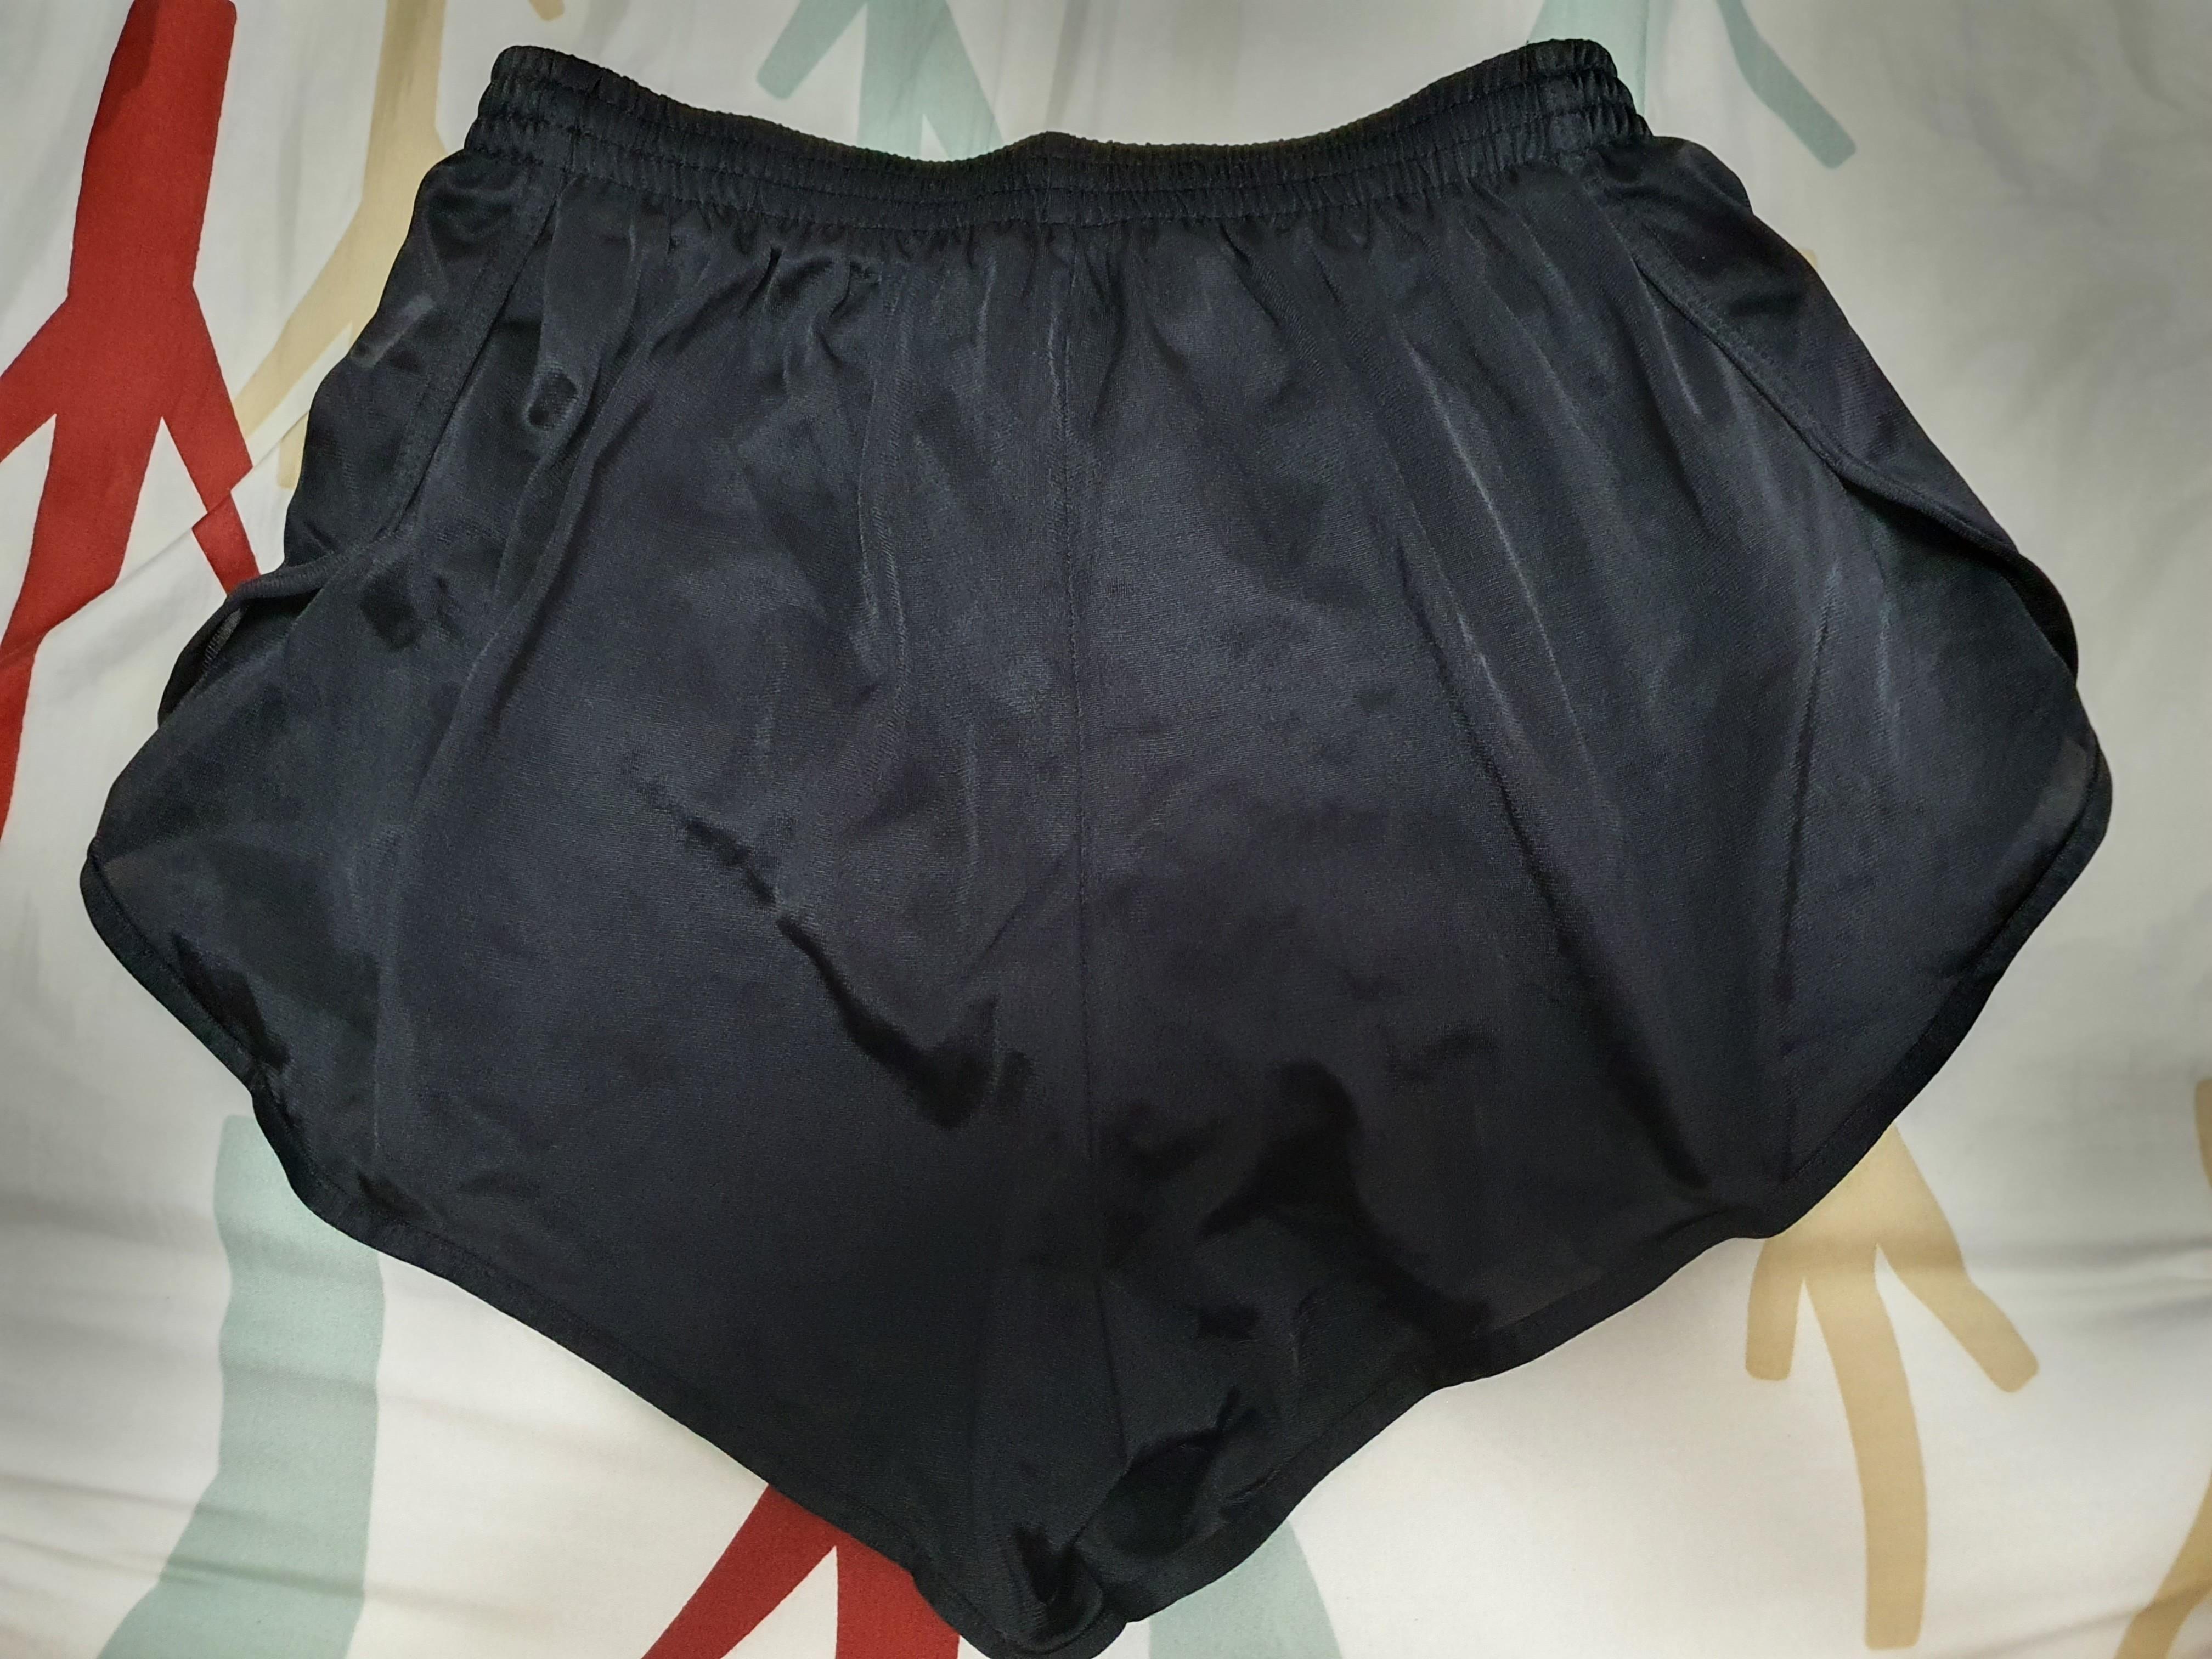 FBT Shorts Black Translucent Curve Cut, Women's Fashion, Bottoms ...